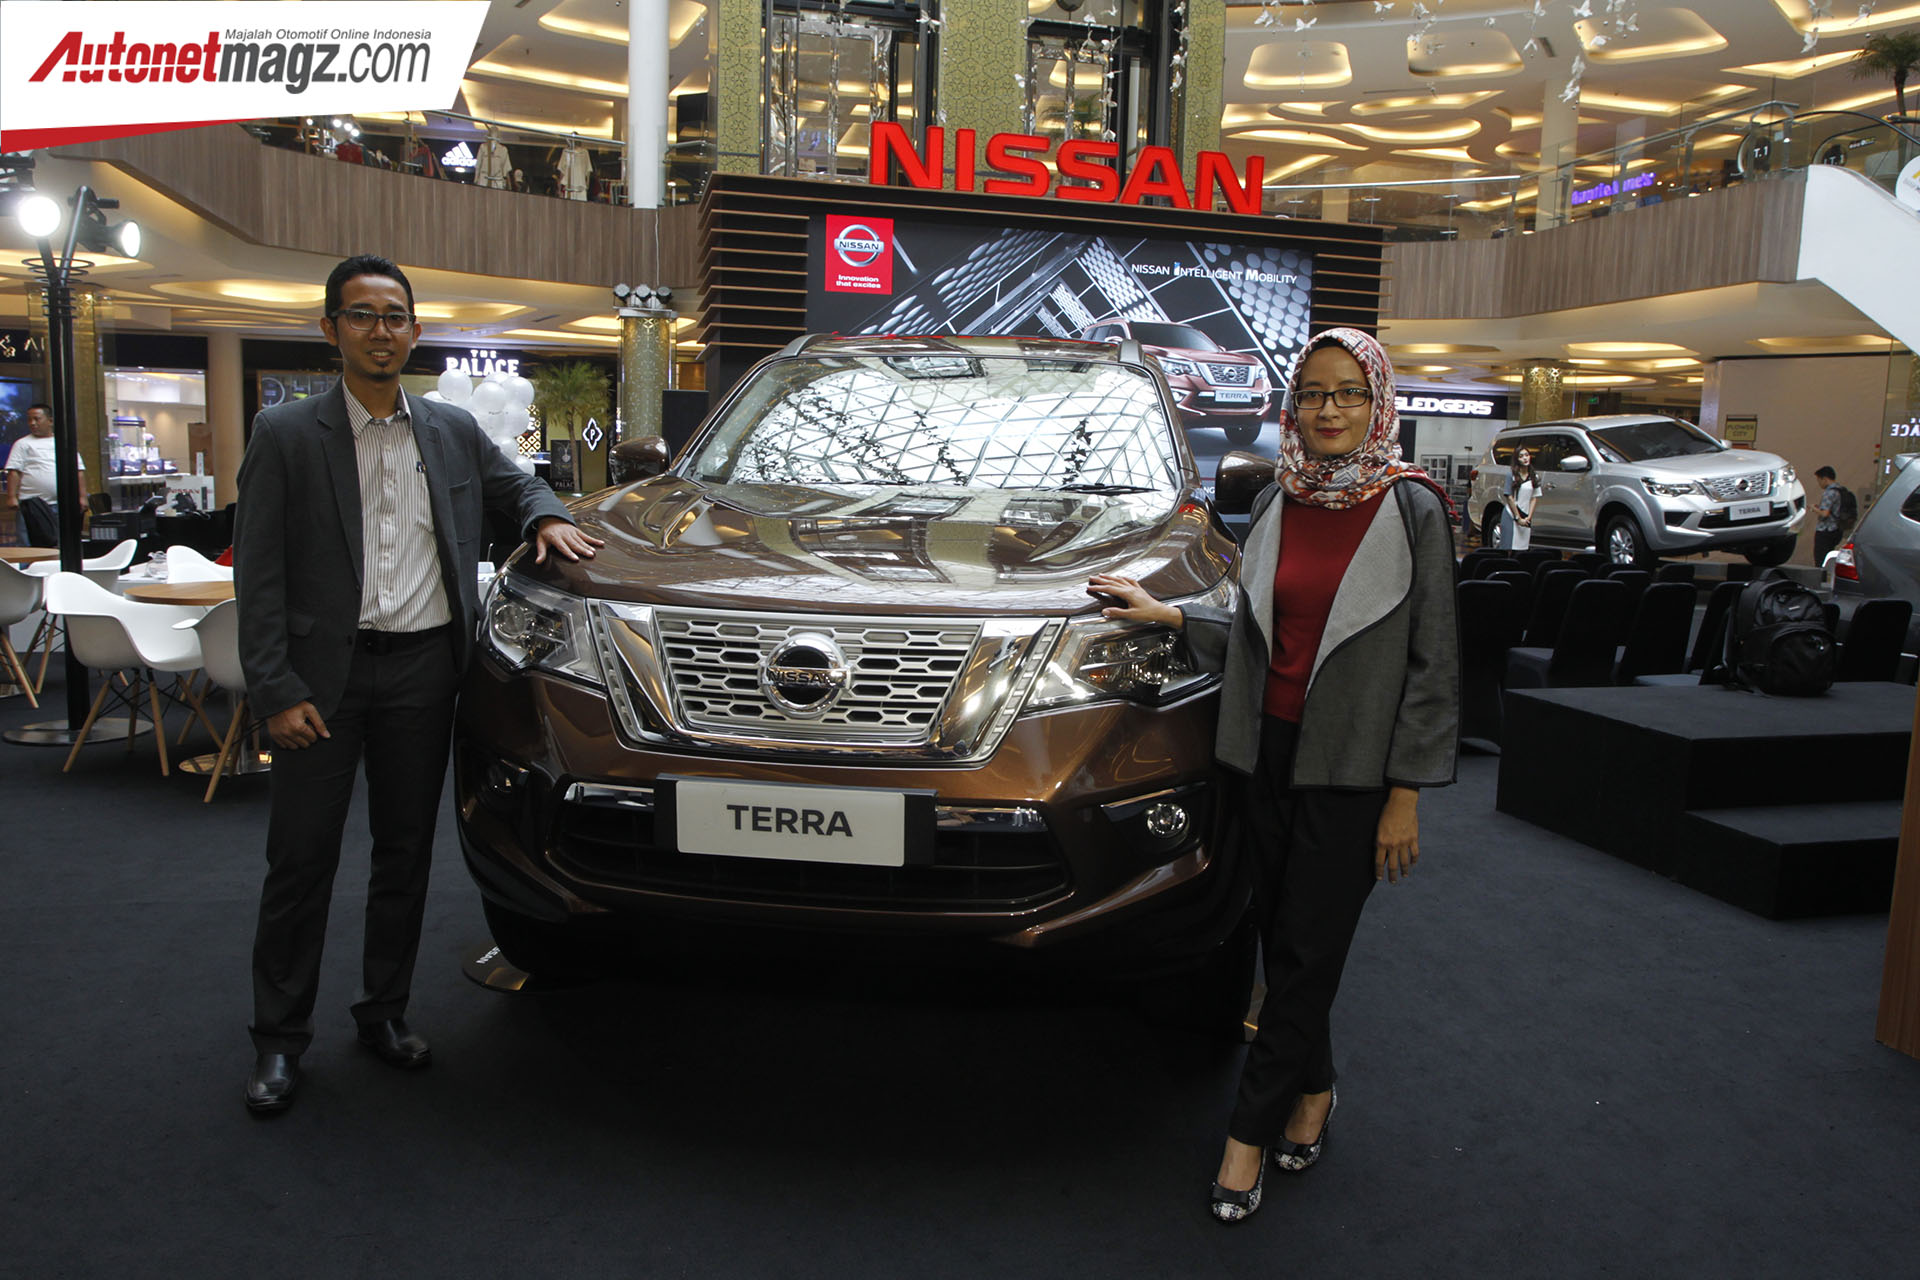 Berita, Nissan Terra Bandung: Nissan Motor Indonesia Rilis Nissan Terra di Bandung